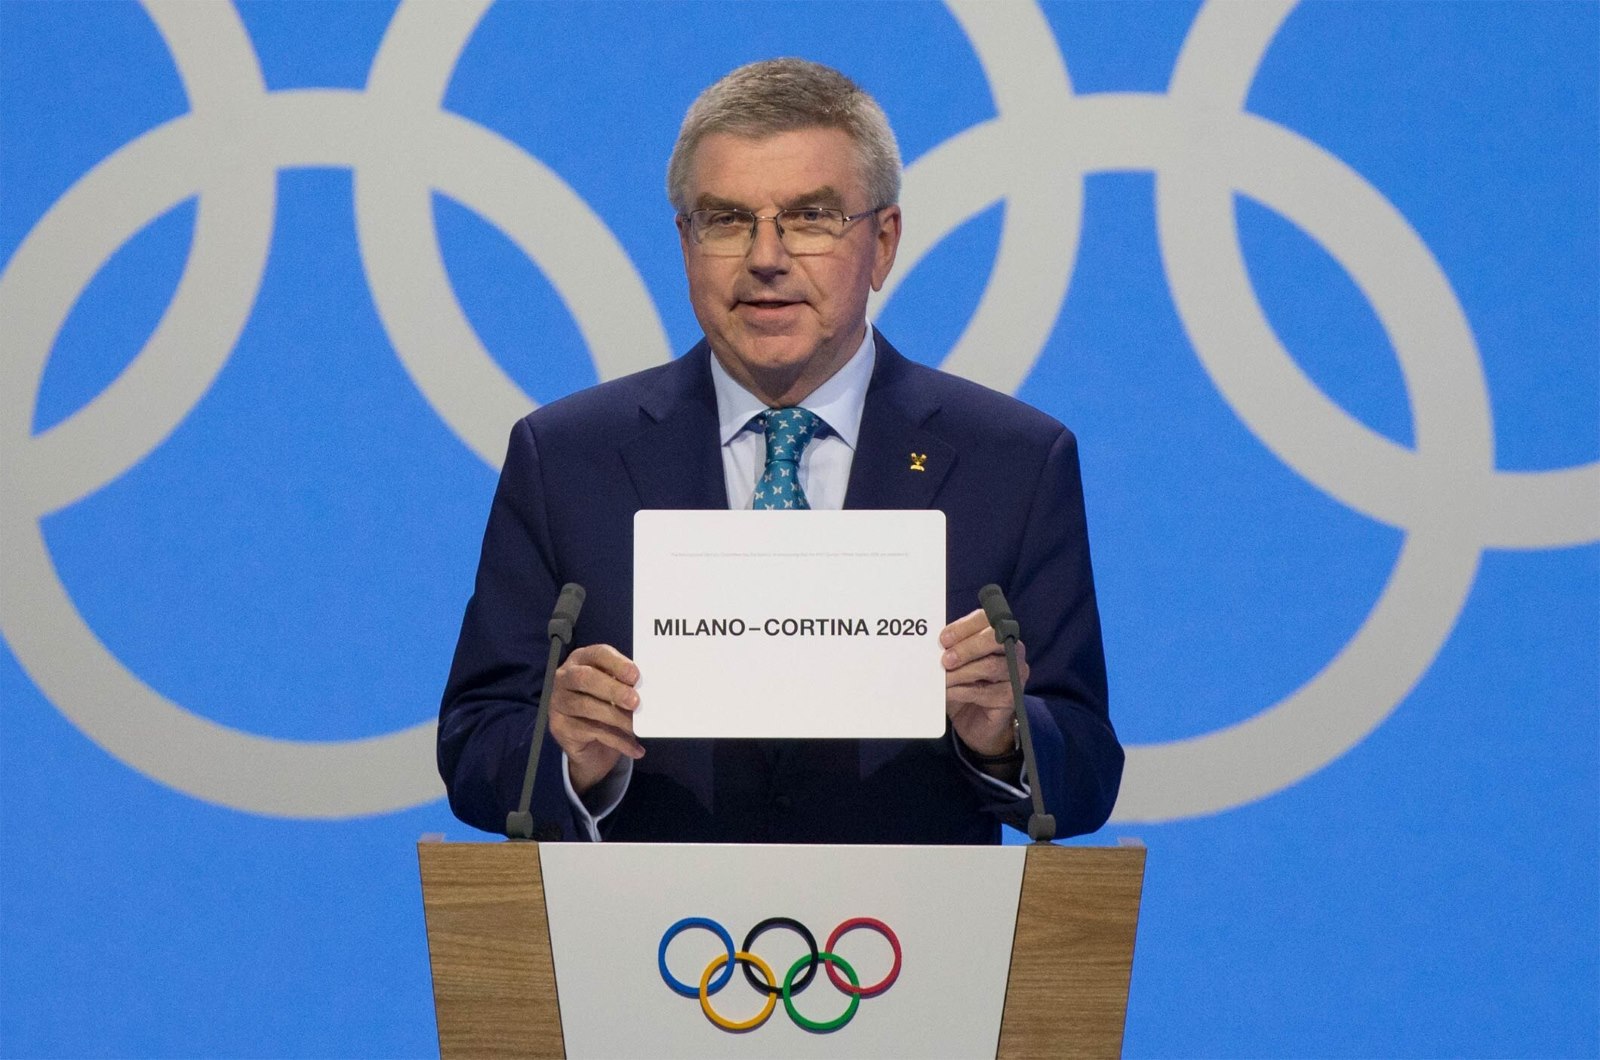 ¡Ganó Italia! Milán-Cortina organizará los Juegos Olímpicos de invierno en 2026